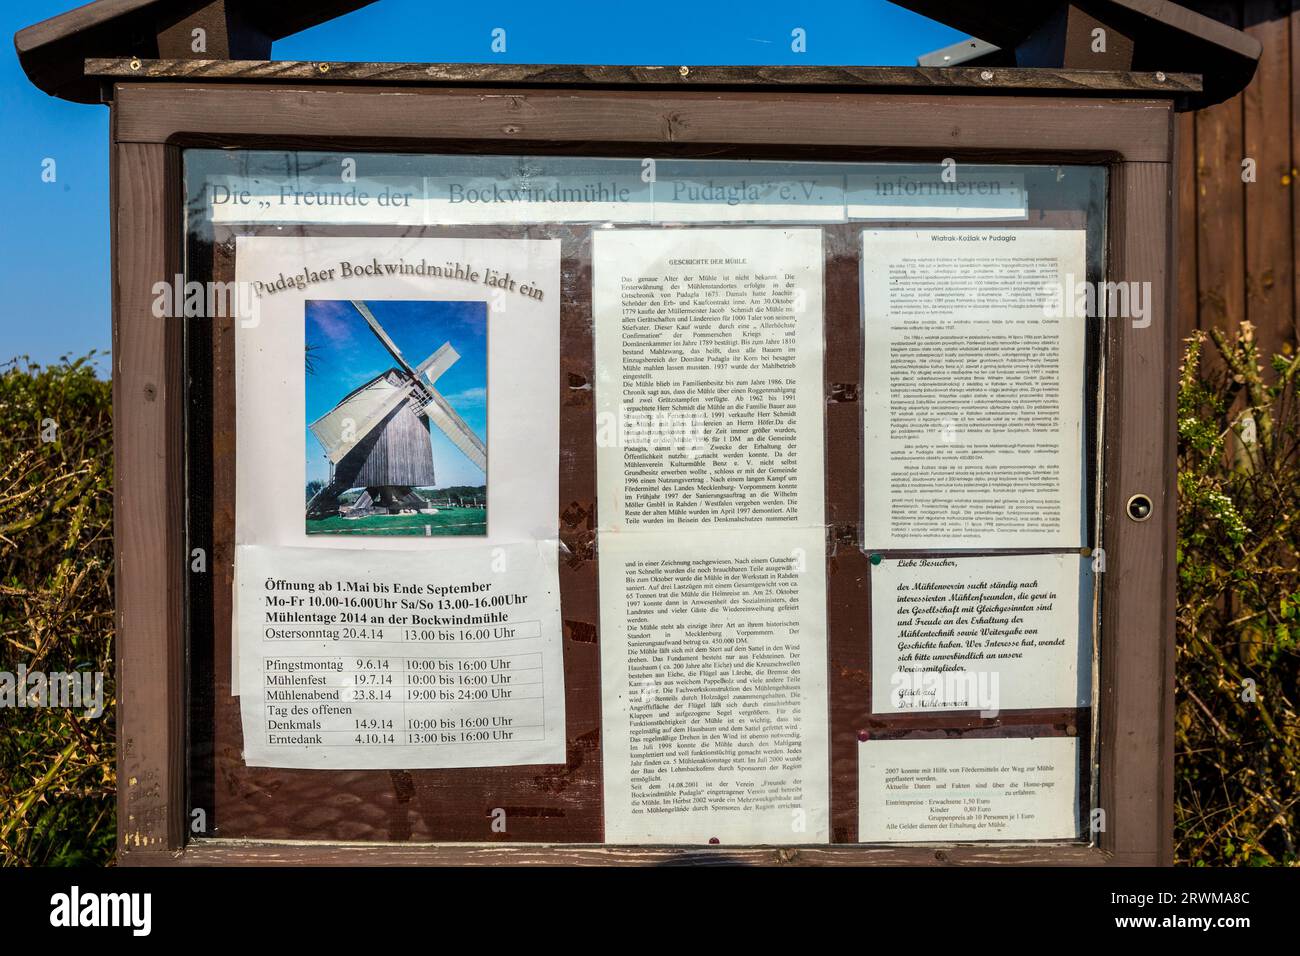 Pudalga, Germania - 19 aprile 2014: Spiegazione del mulino eolico della costa baltica di Pudalga in un cartello informativo in inglese e polacco. Foto Stock